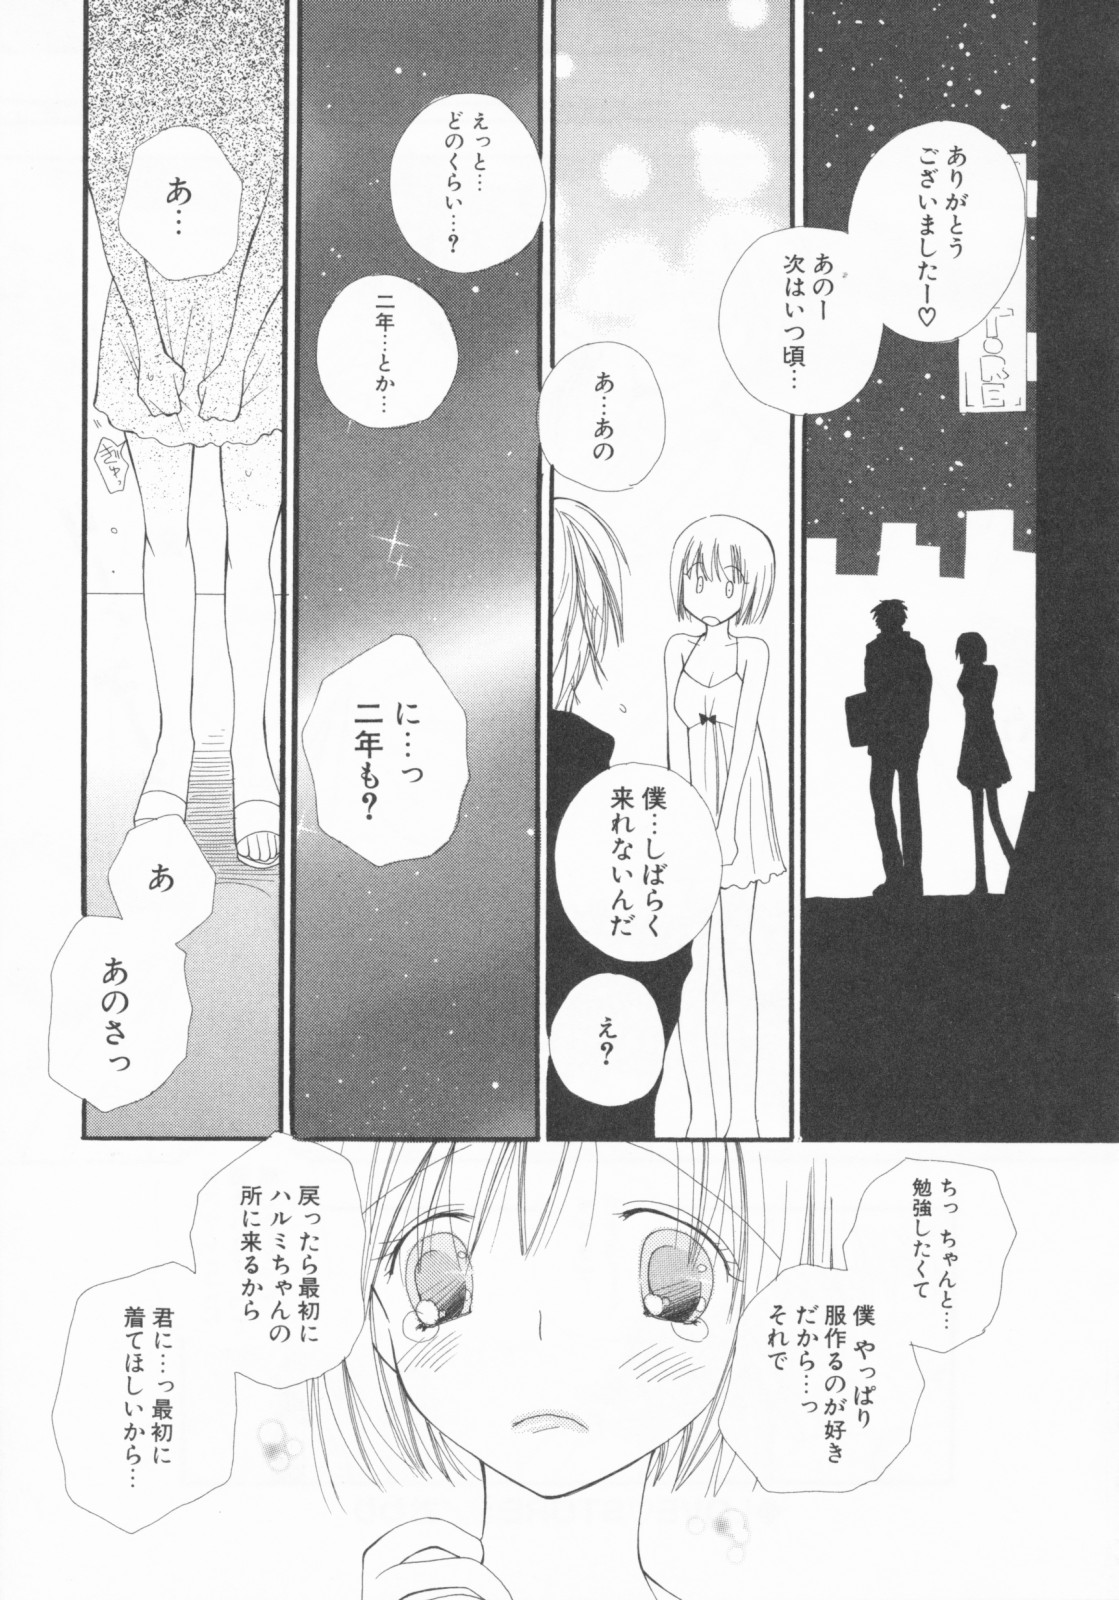 [Inomoto Rikako] LOVE・STORE plus [井ノ本リカ子] LOVE・STORE plus